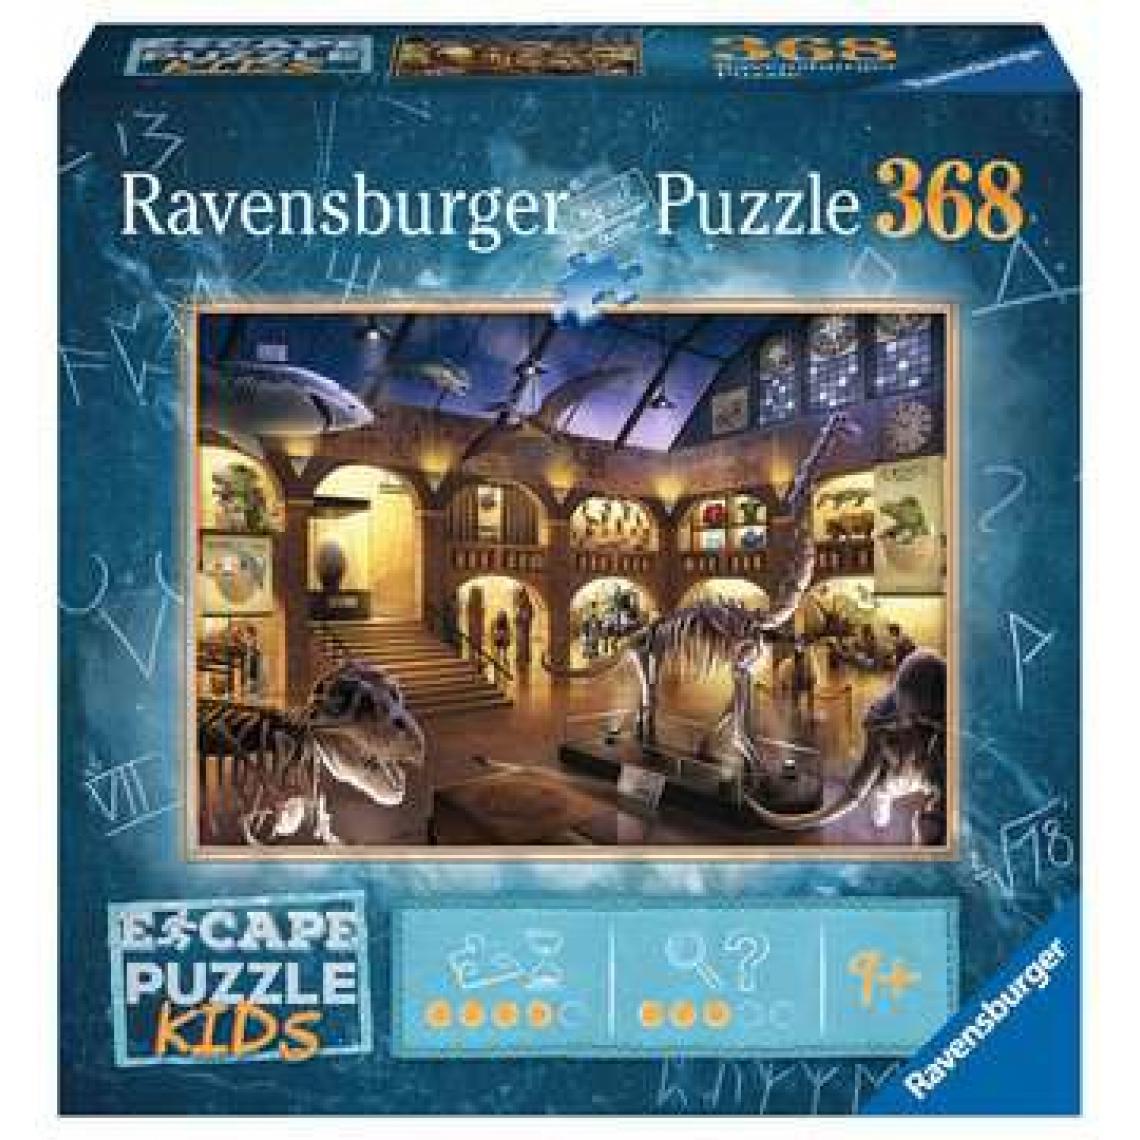 Ravensburger - Escape puzzle Kids - Une nuit au musée - Ravensburger - Puzzle Escape Game 368 pieces - Des 9 ans - Animaux